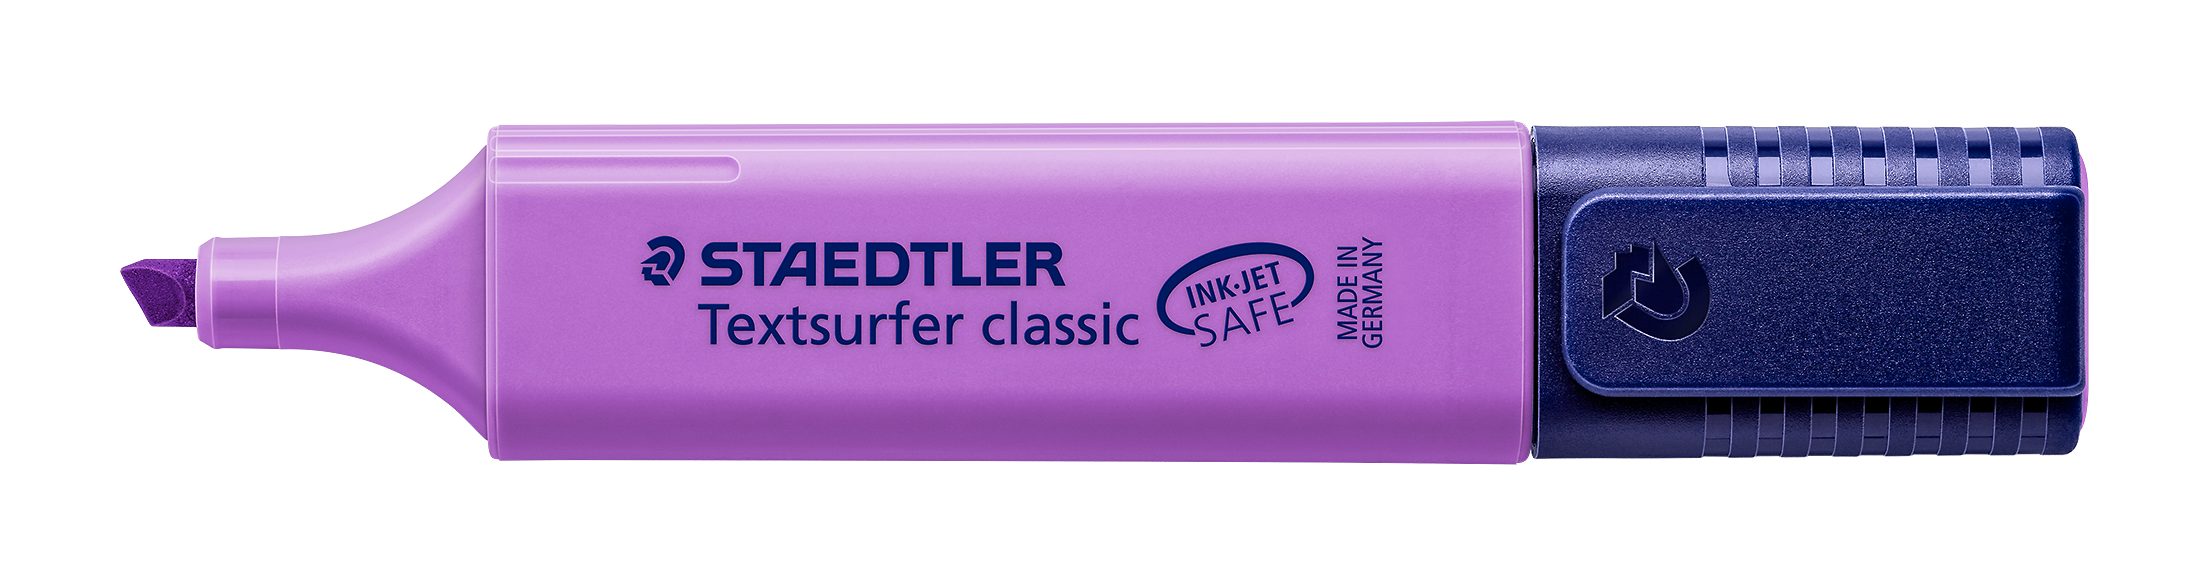 INK violett SAFE JET STAEDTLER lila, Marker Textsurfer Leuchtstift 364-6 classic Staedtler